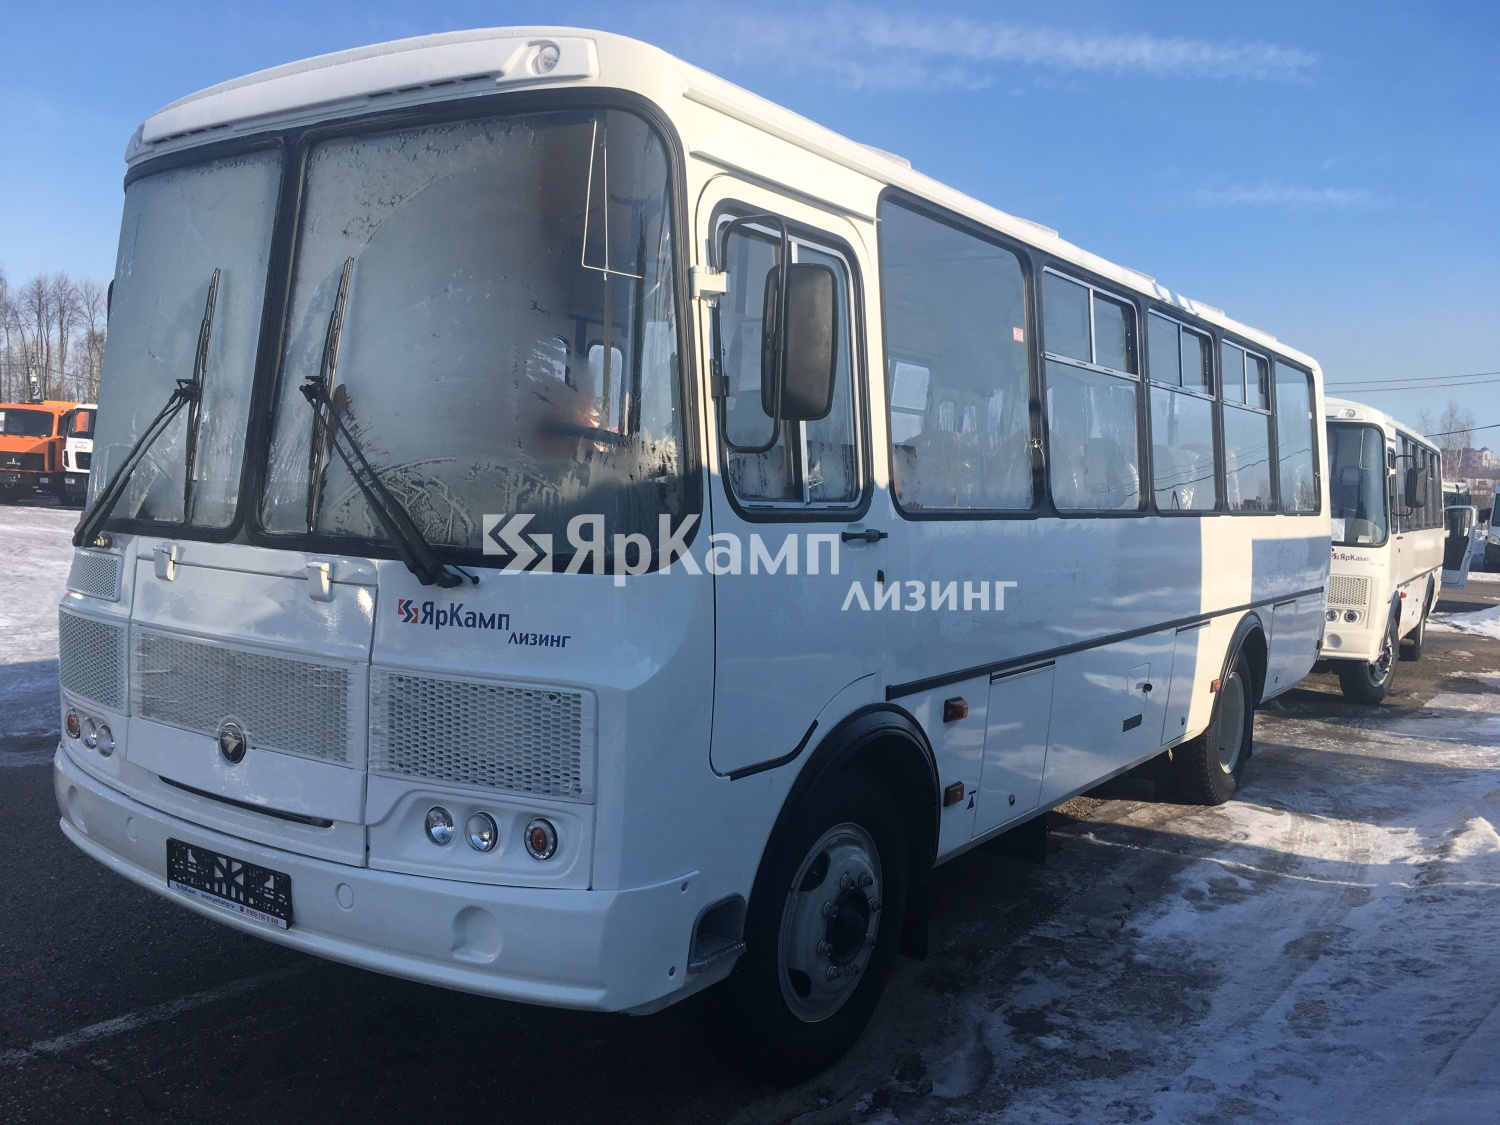 Два автобуса ПАЗ 4234-05 поставлены на правах финансовой аренды